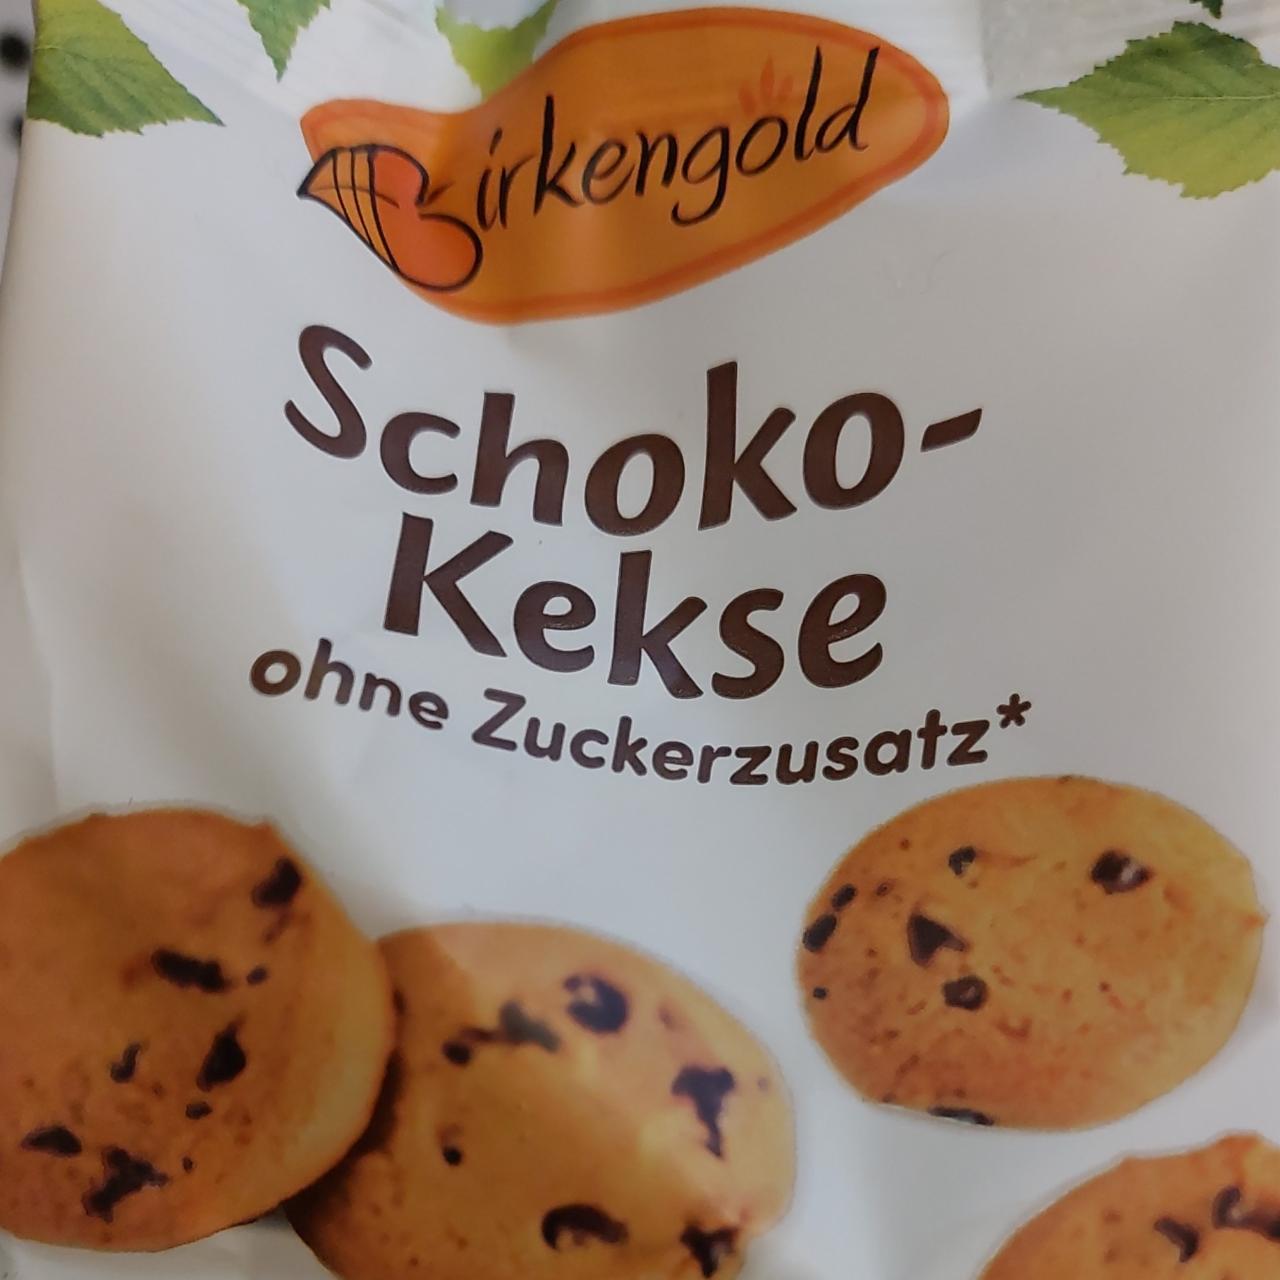 Fotografie - Schoko-kekse ohne Zuckerzusatz Birkengold